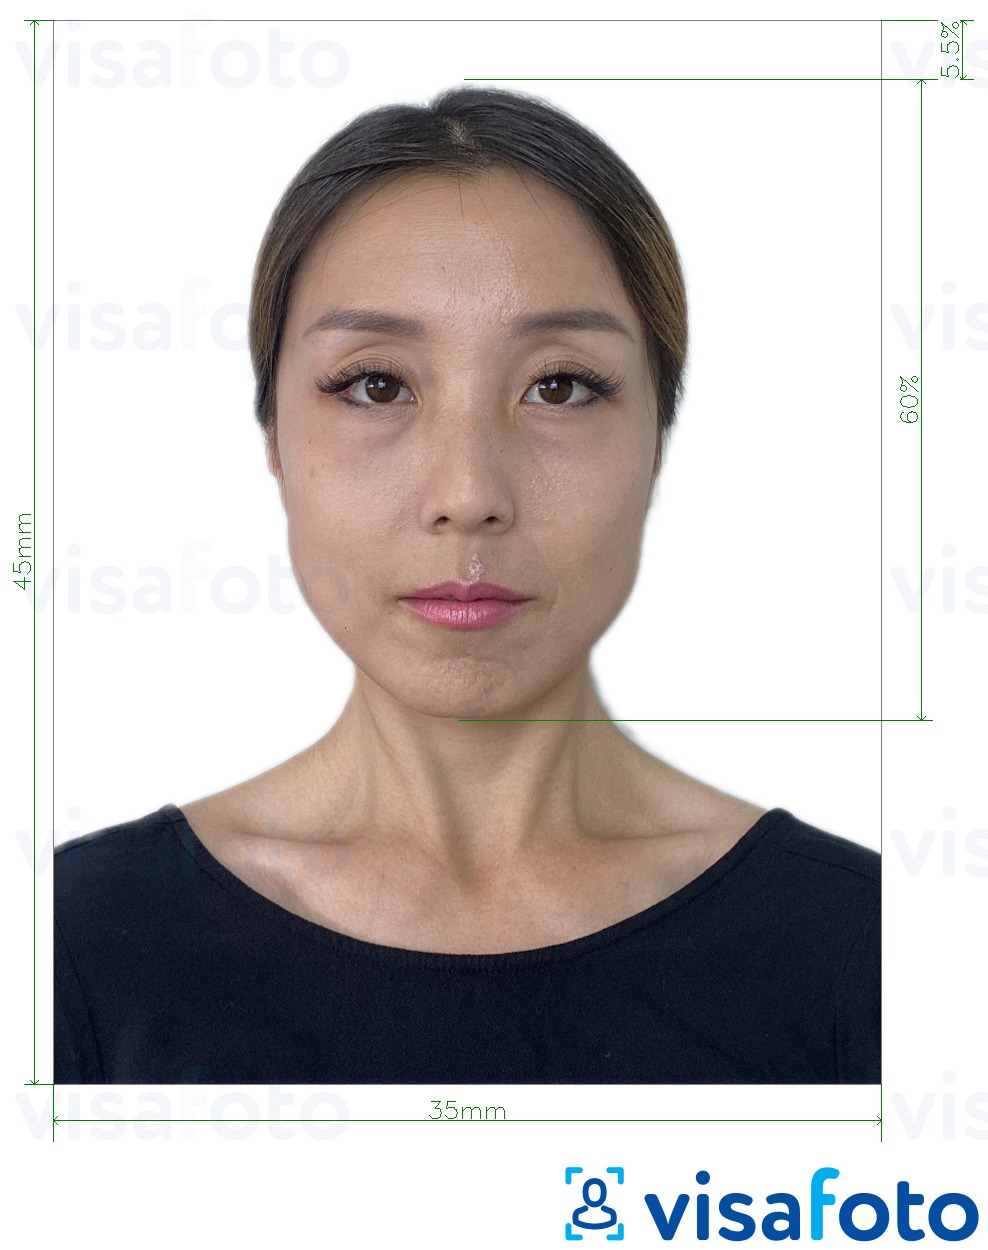  Jaapan GoGoNihon 800 pikslit 35x45 mm fotonäidis koos täpse infoga mõõtude kohta.